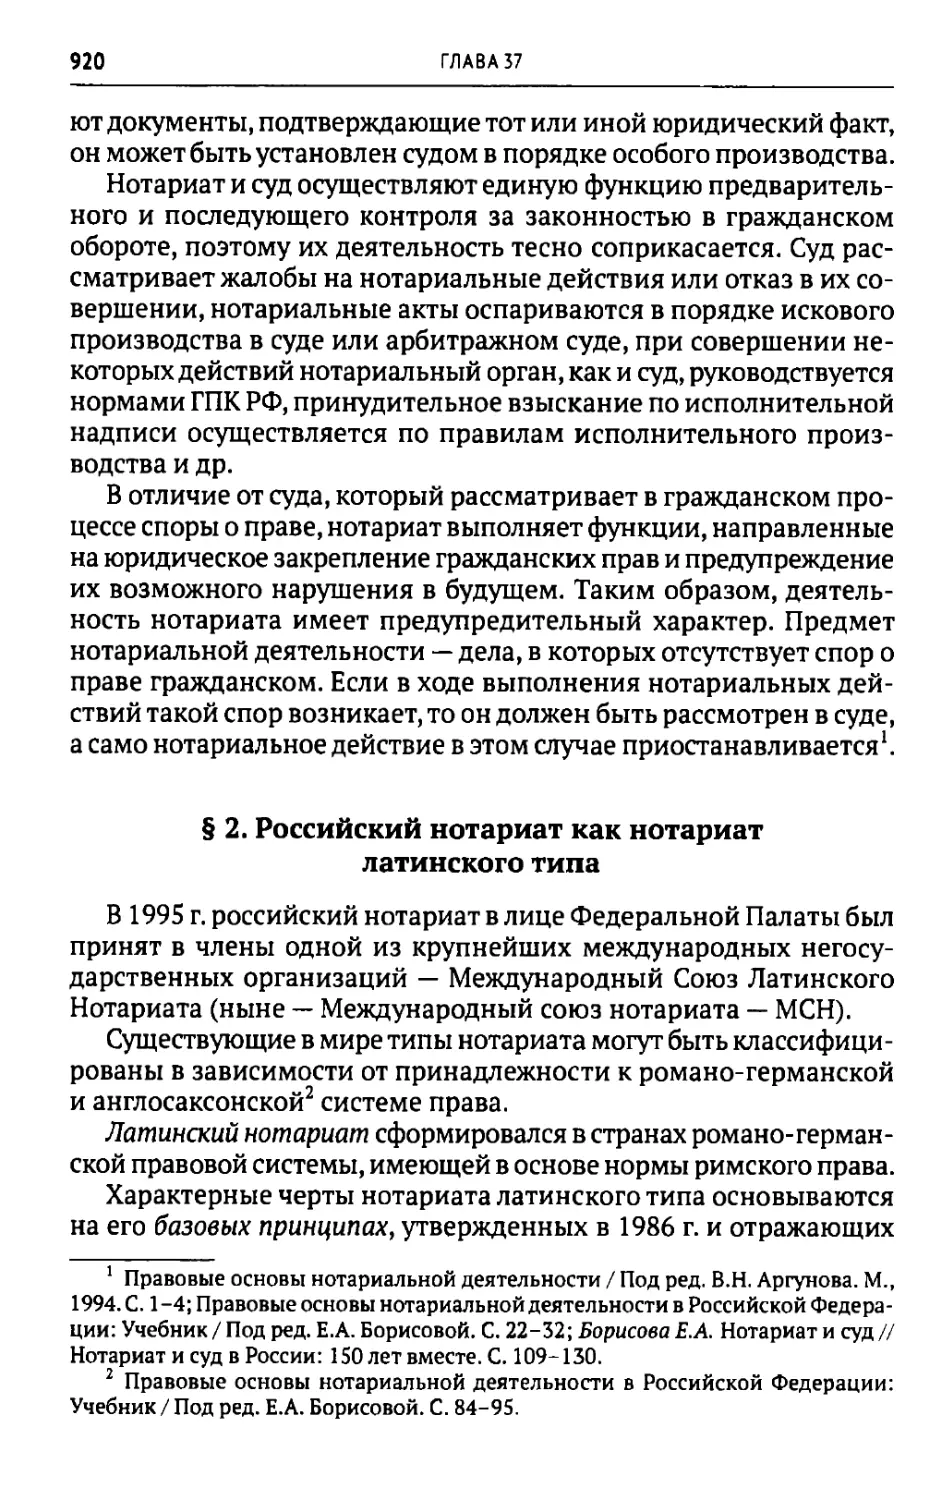 § 2. Российский нотариат как нотариат латинского типа